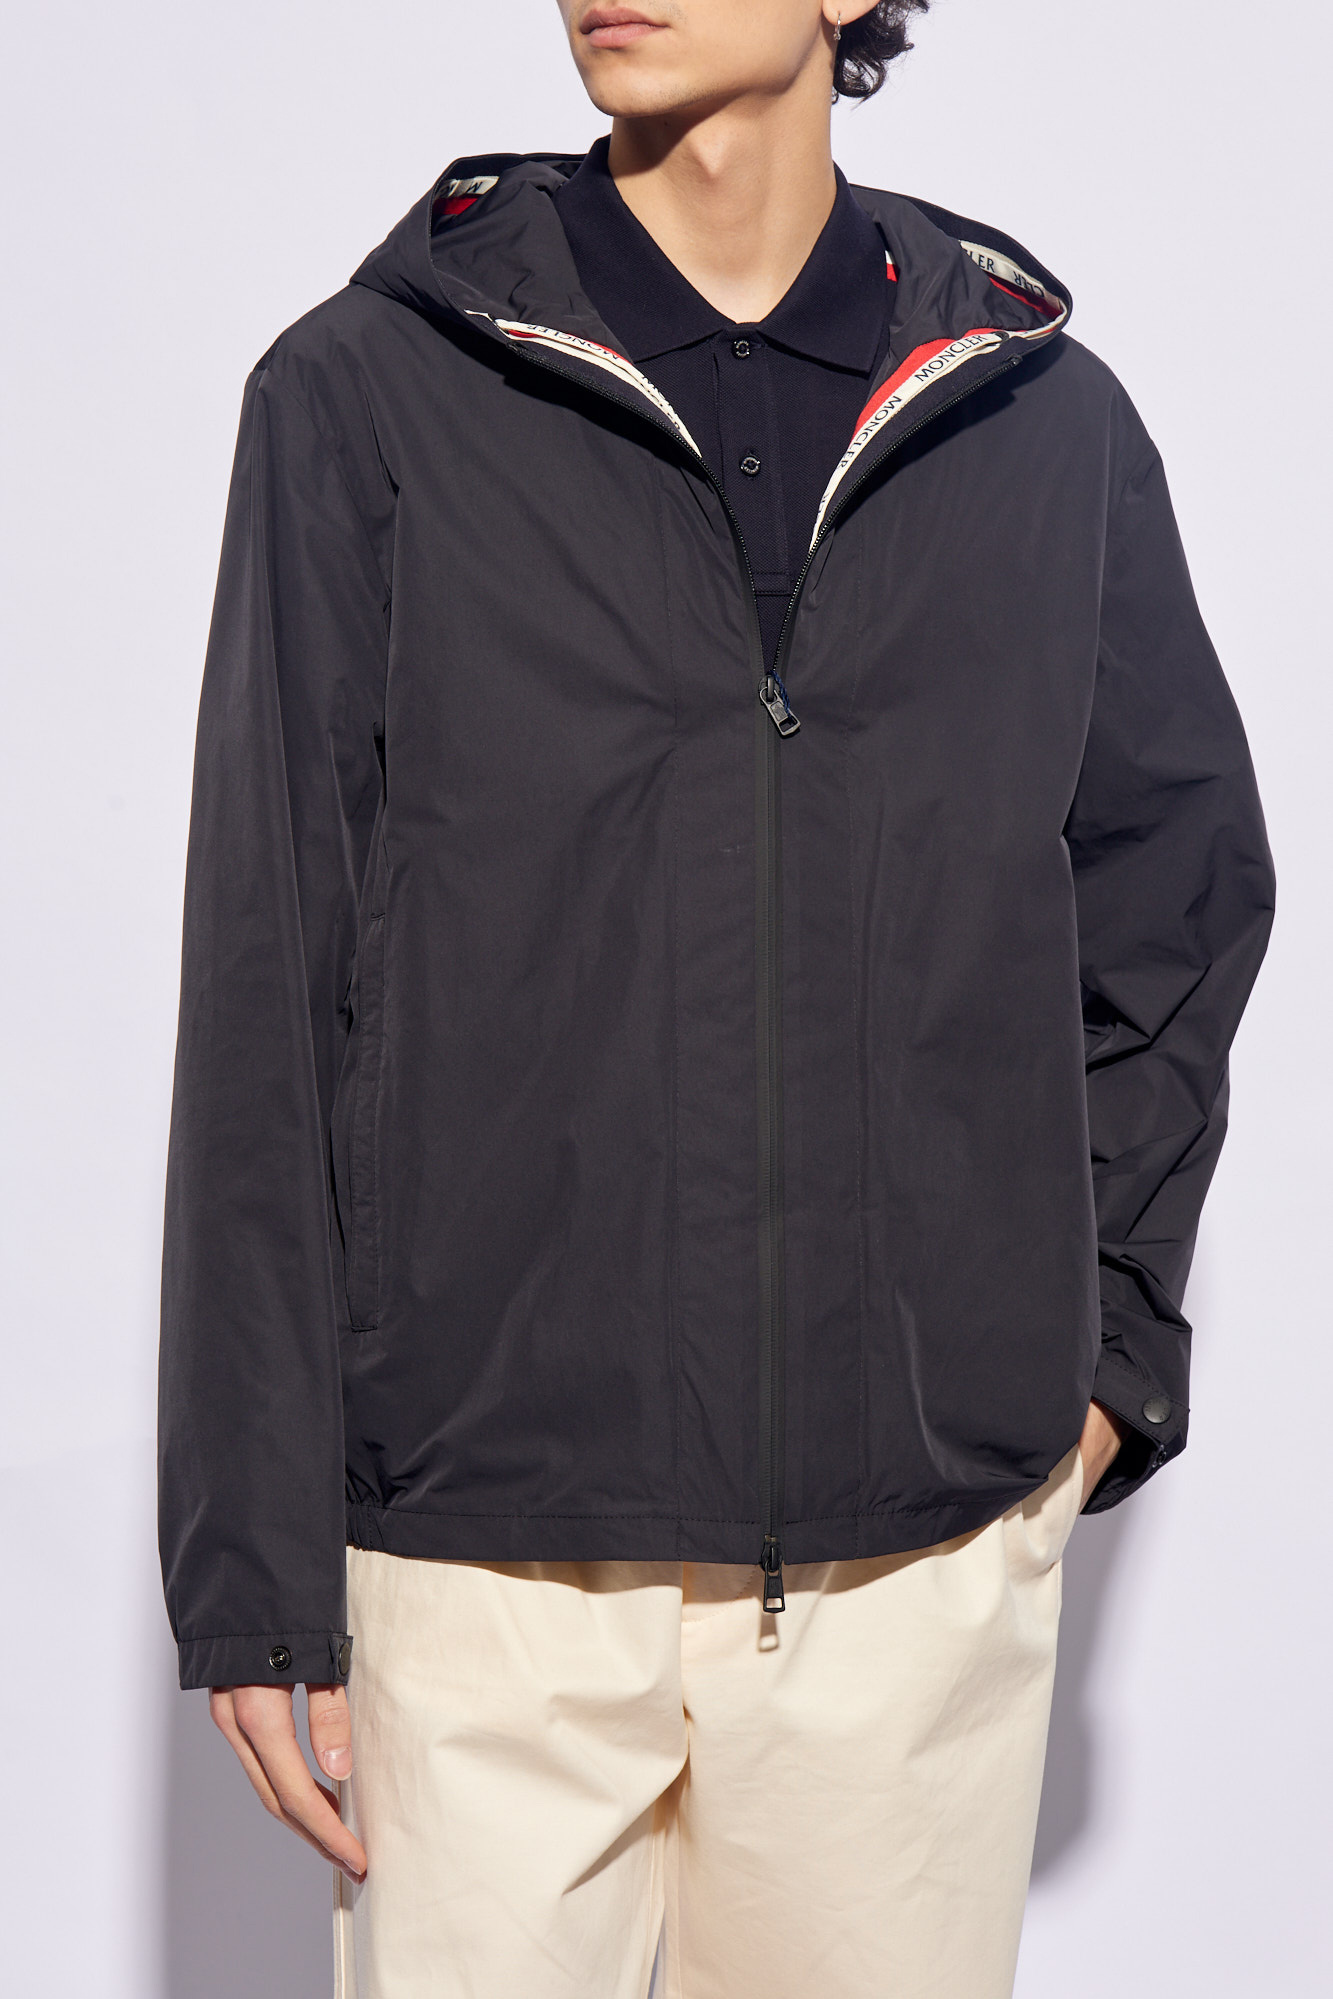 Moncler 'Carles' jacket | Men's Clothing | Vitkac